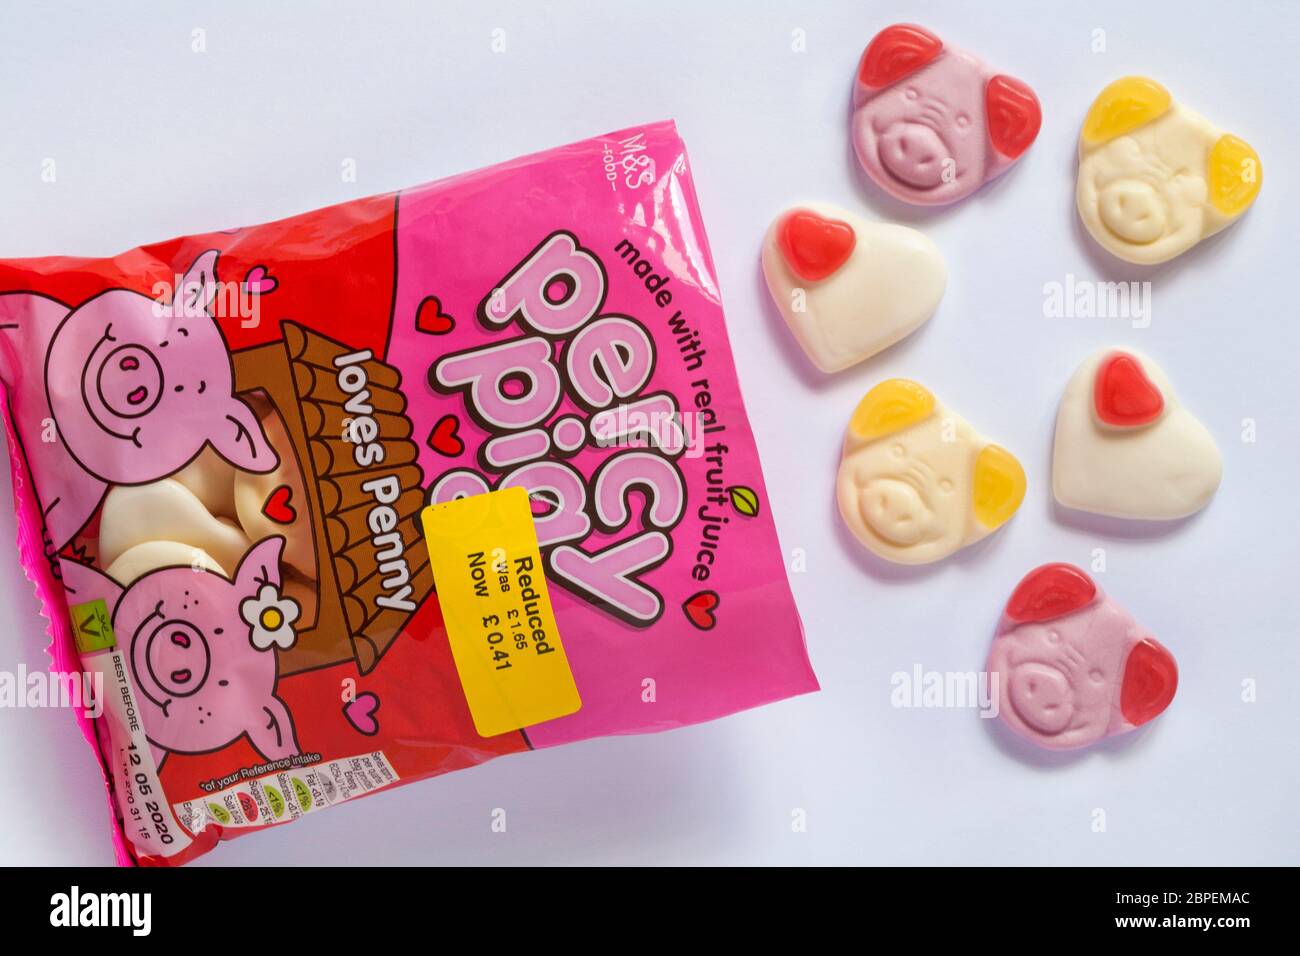 Paquet de percy cog aime les bonbons Penny faits avec le vrai jus de fruit  ouvert pour montrer le contenu sur fond blanc - réduction de nourriture  jaune autocollant Photo Stock - Alamy